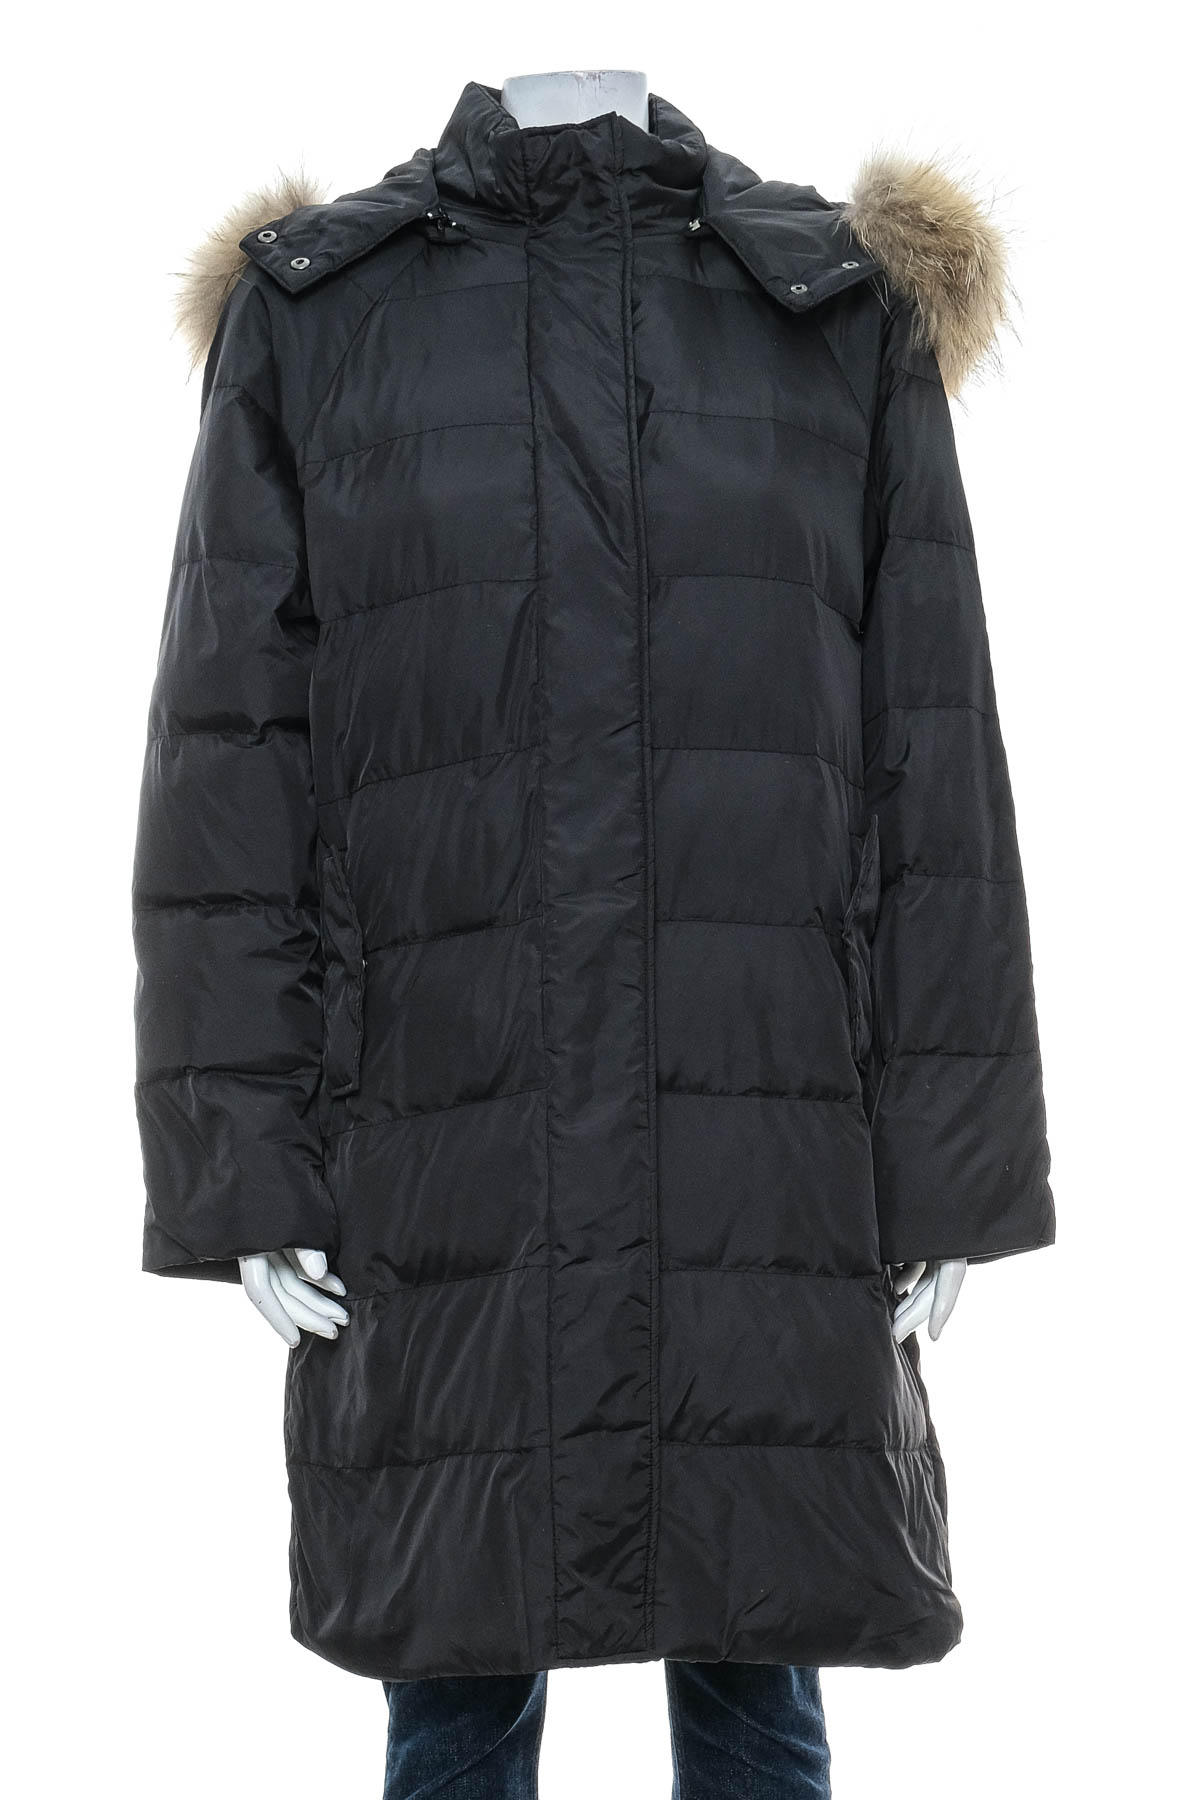 Female jacket - GOA - 0